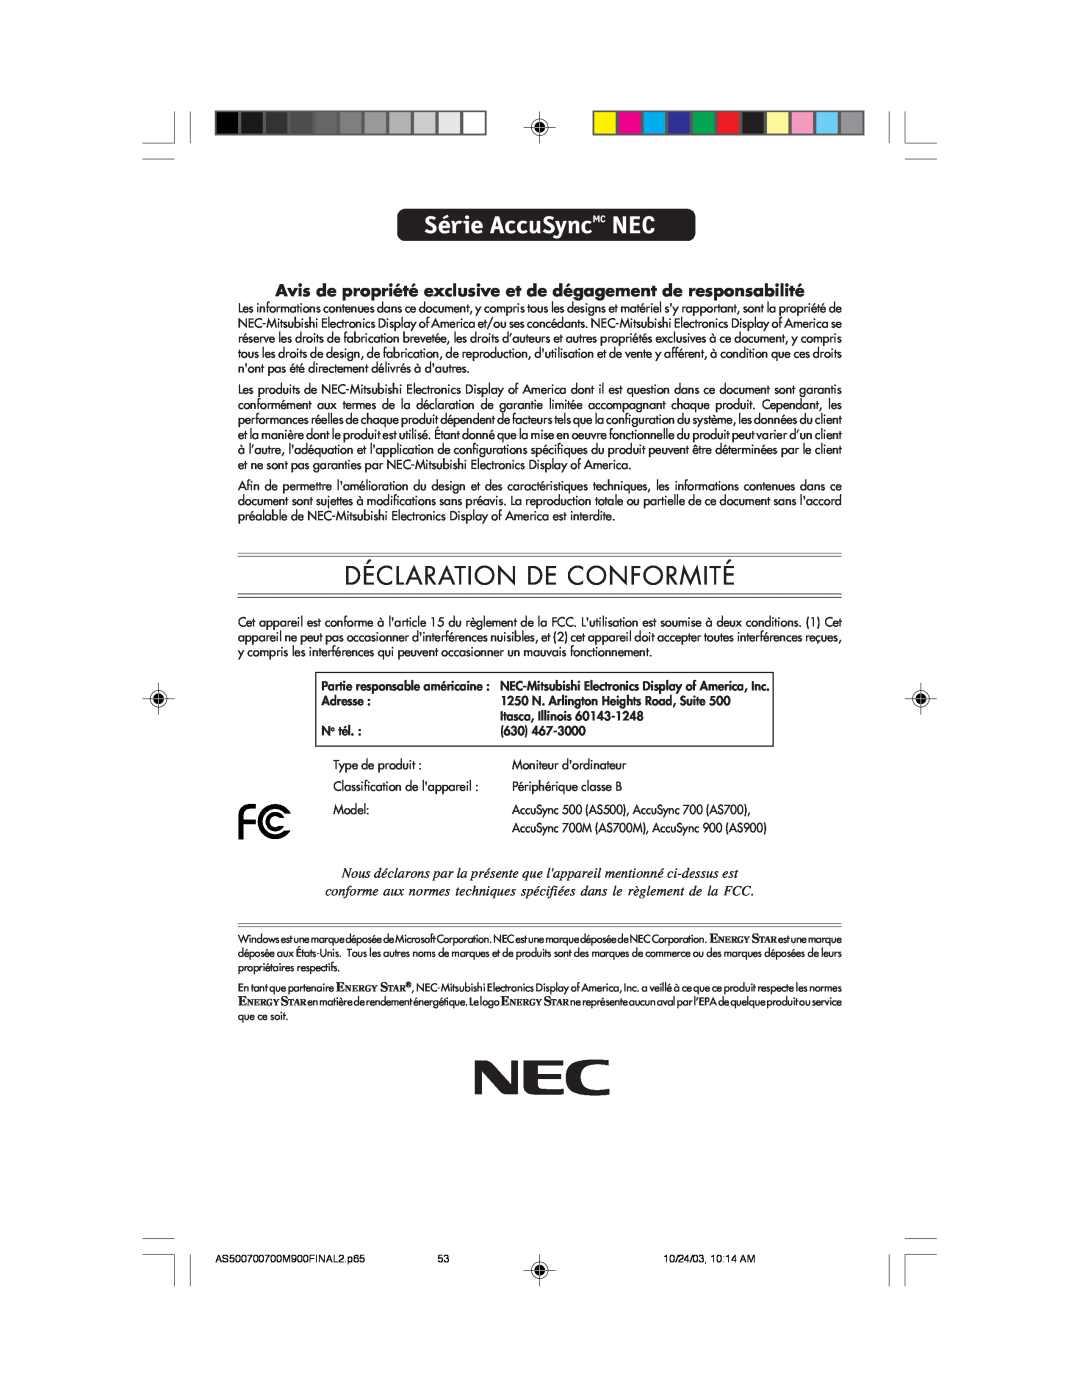 NEC 700 Série AccuSyncMC NEC, Déclaration De Conformité, Avis de propriété exclusive et de dégagement de responsabilité 